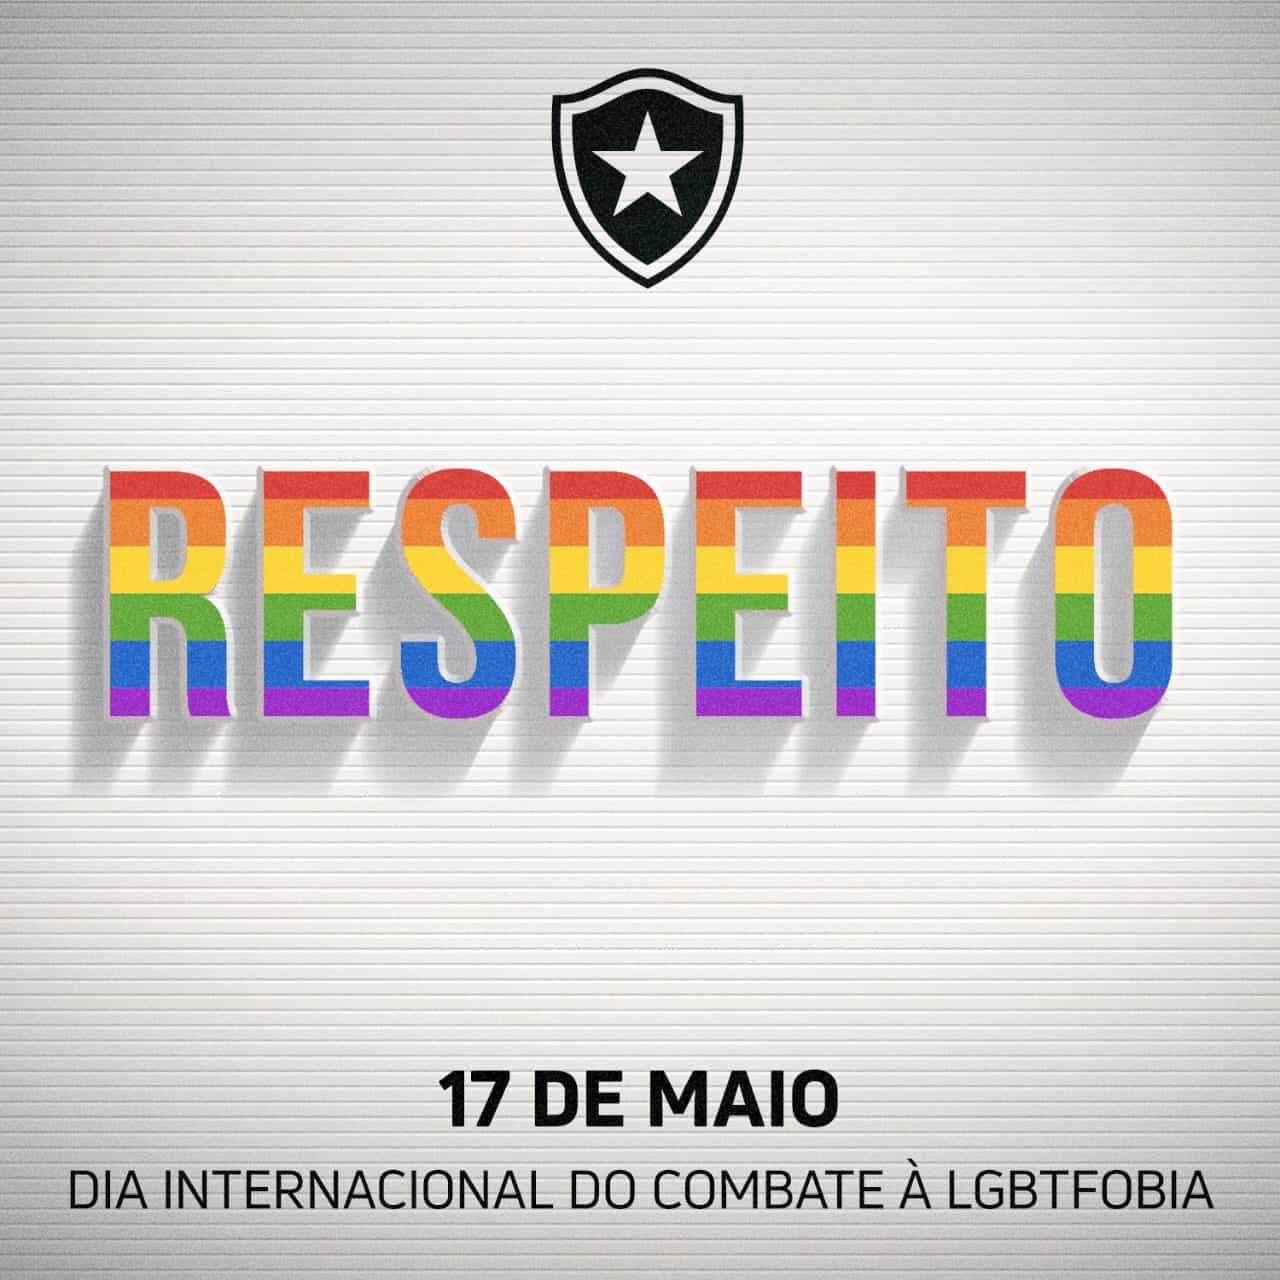 "Respeito, igualdade e liberdade são lutas para todos os dias", escreveu o Botafogo.